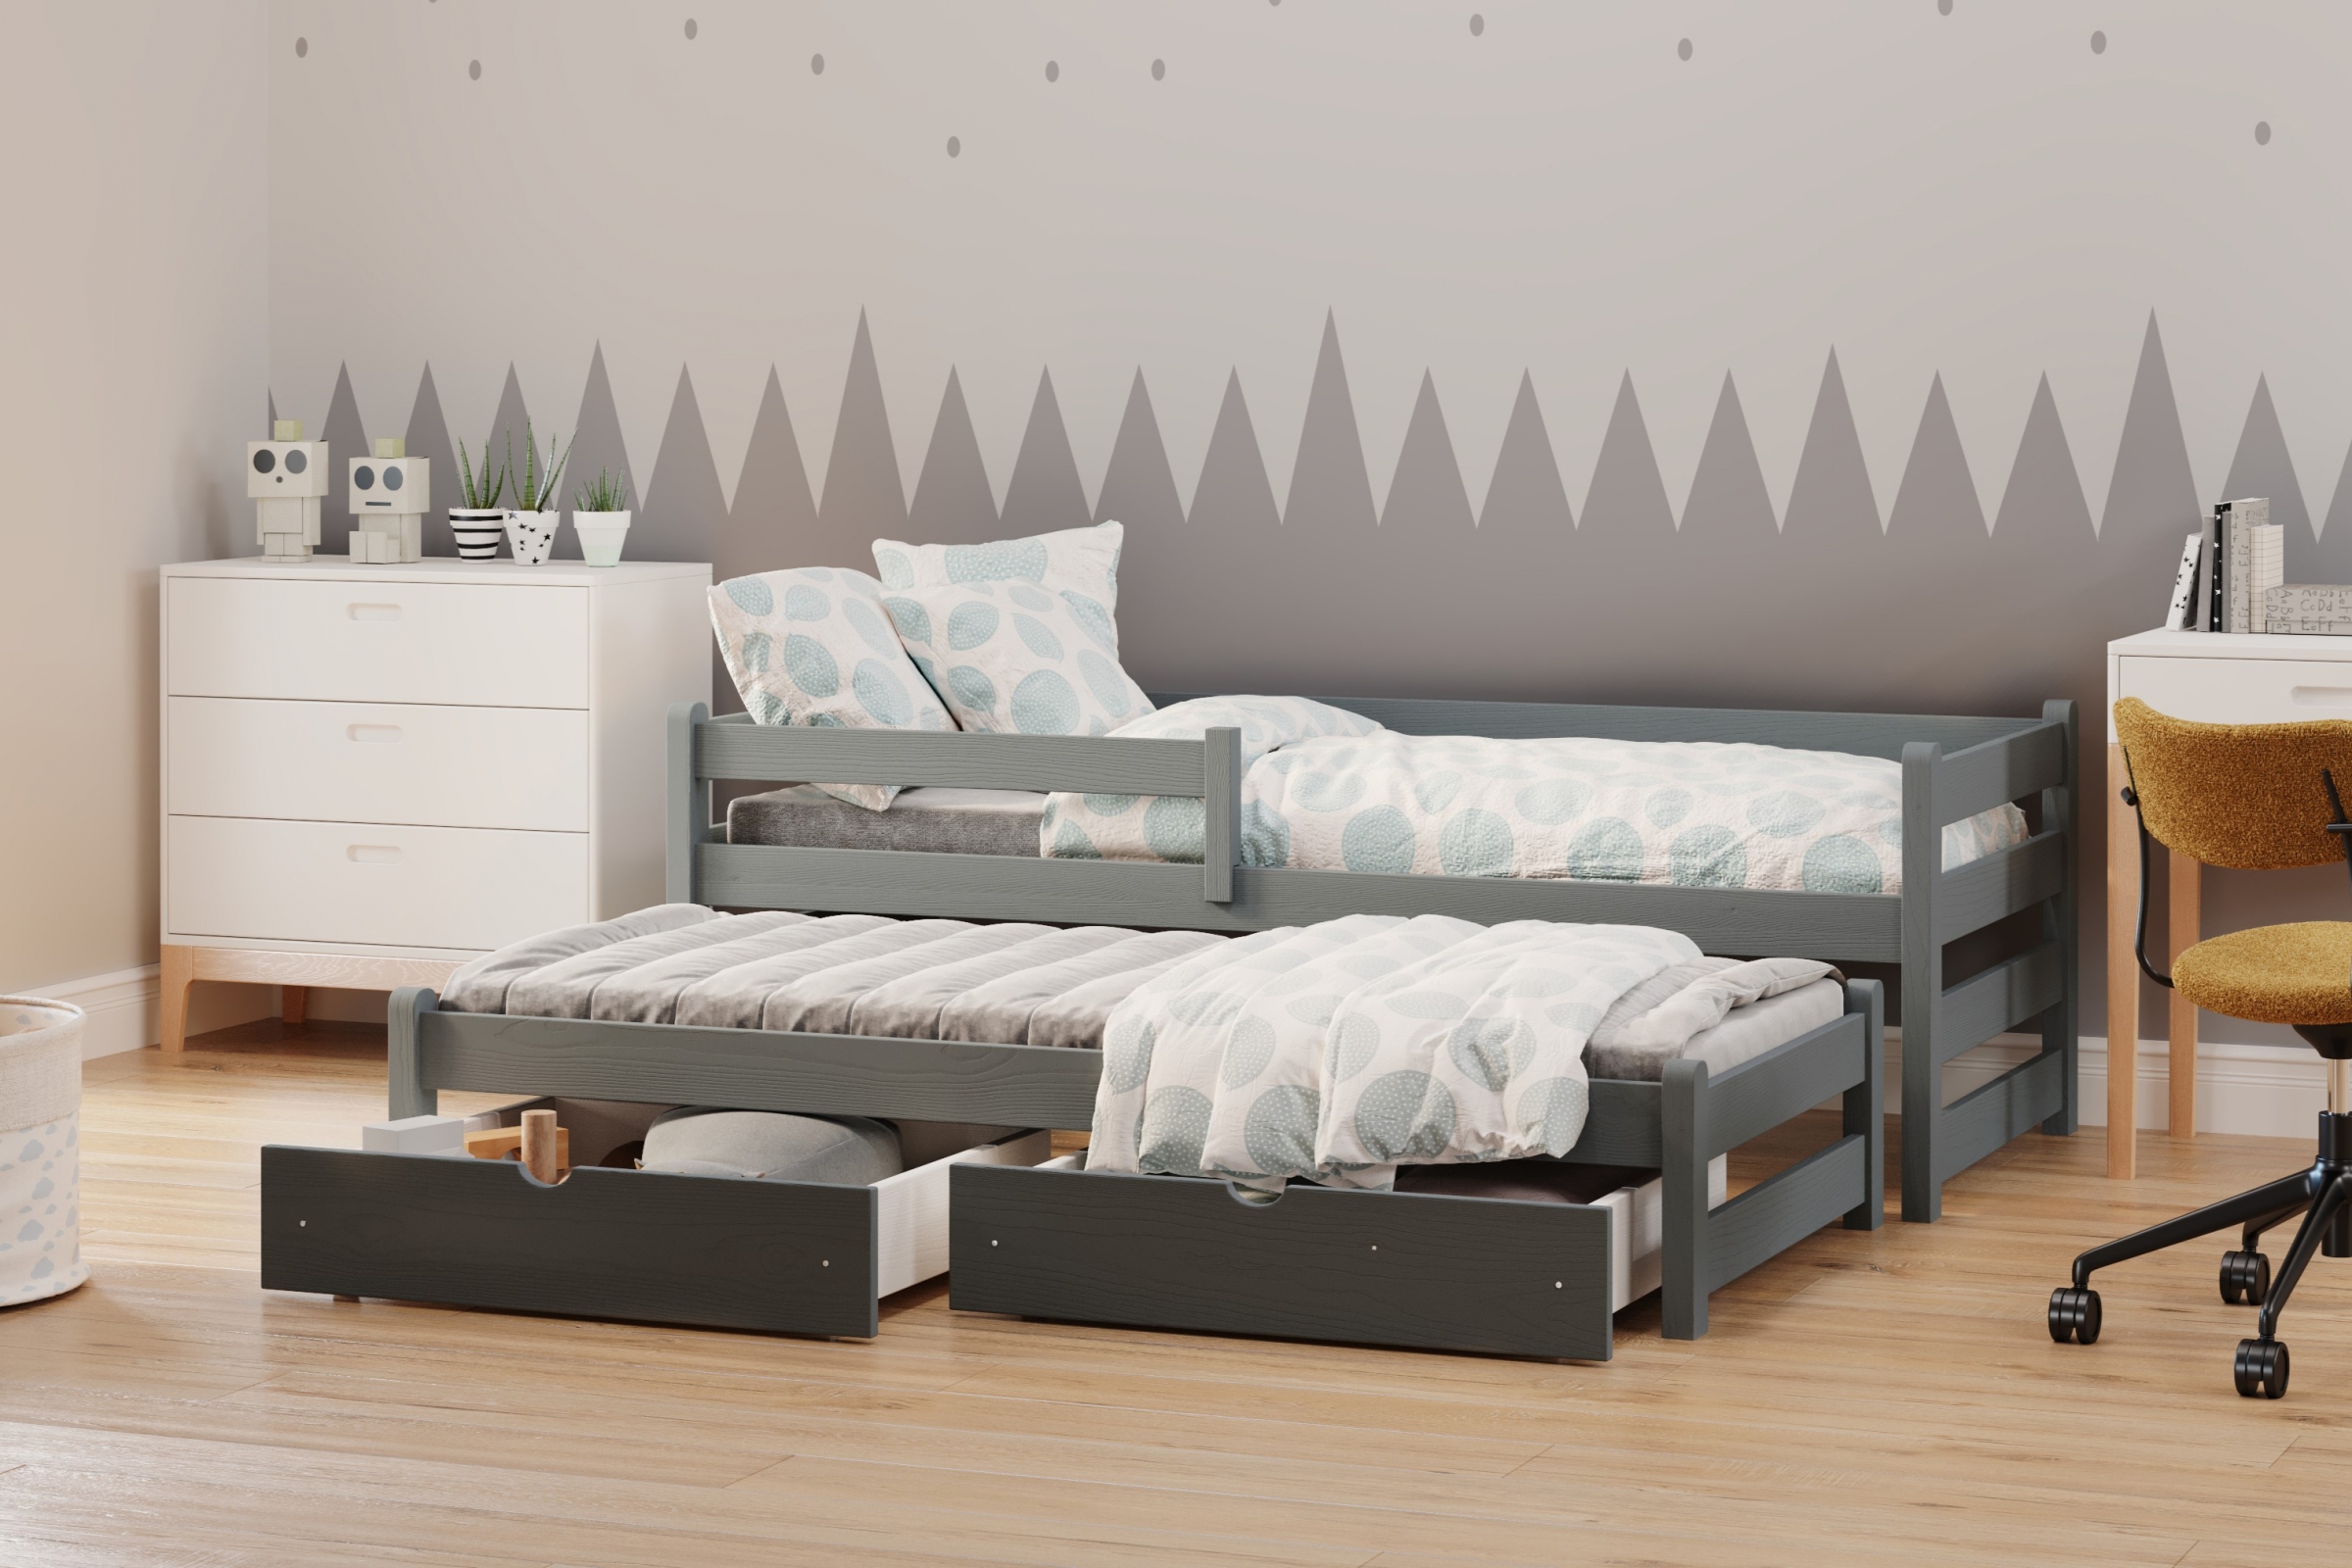 Detská posteľ prízemná s výsuvným lôžkom Alis DPV 001 - grafit, 80x200 Posteľ prízemná s výsuvným lôžkom Alis - Farba Grafit - vizualizácia